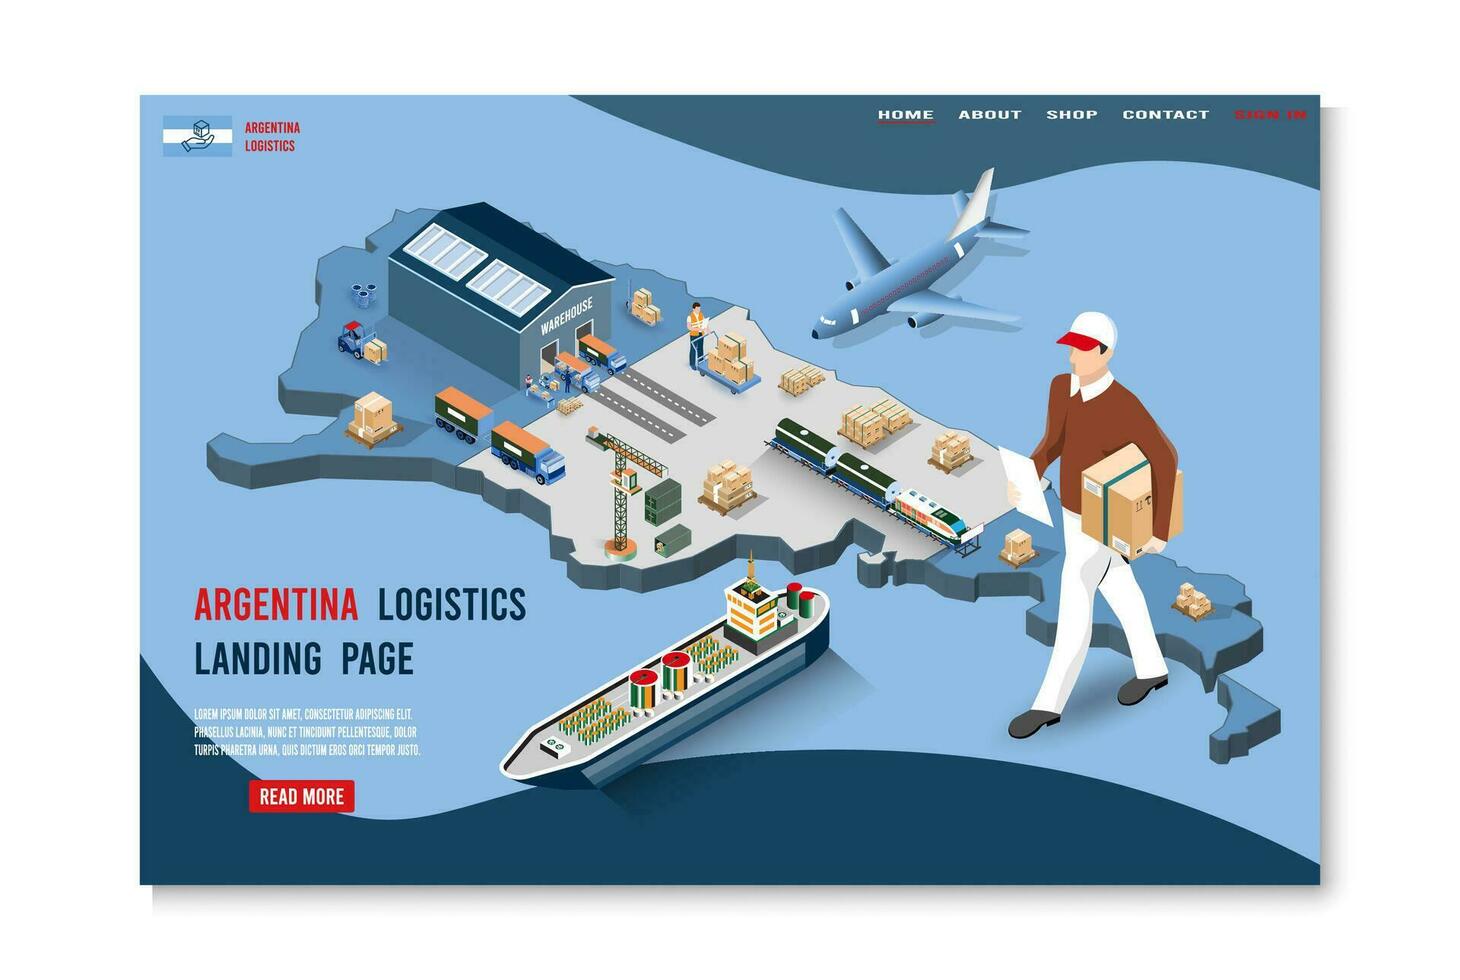 moderno isométrico conceito do Argentina transporte com global logística, armazém logística, mar frete logística. fácil para editar e customizar. vetor ilustração eps10